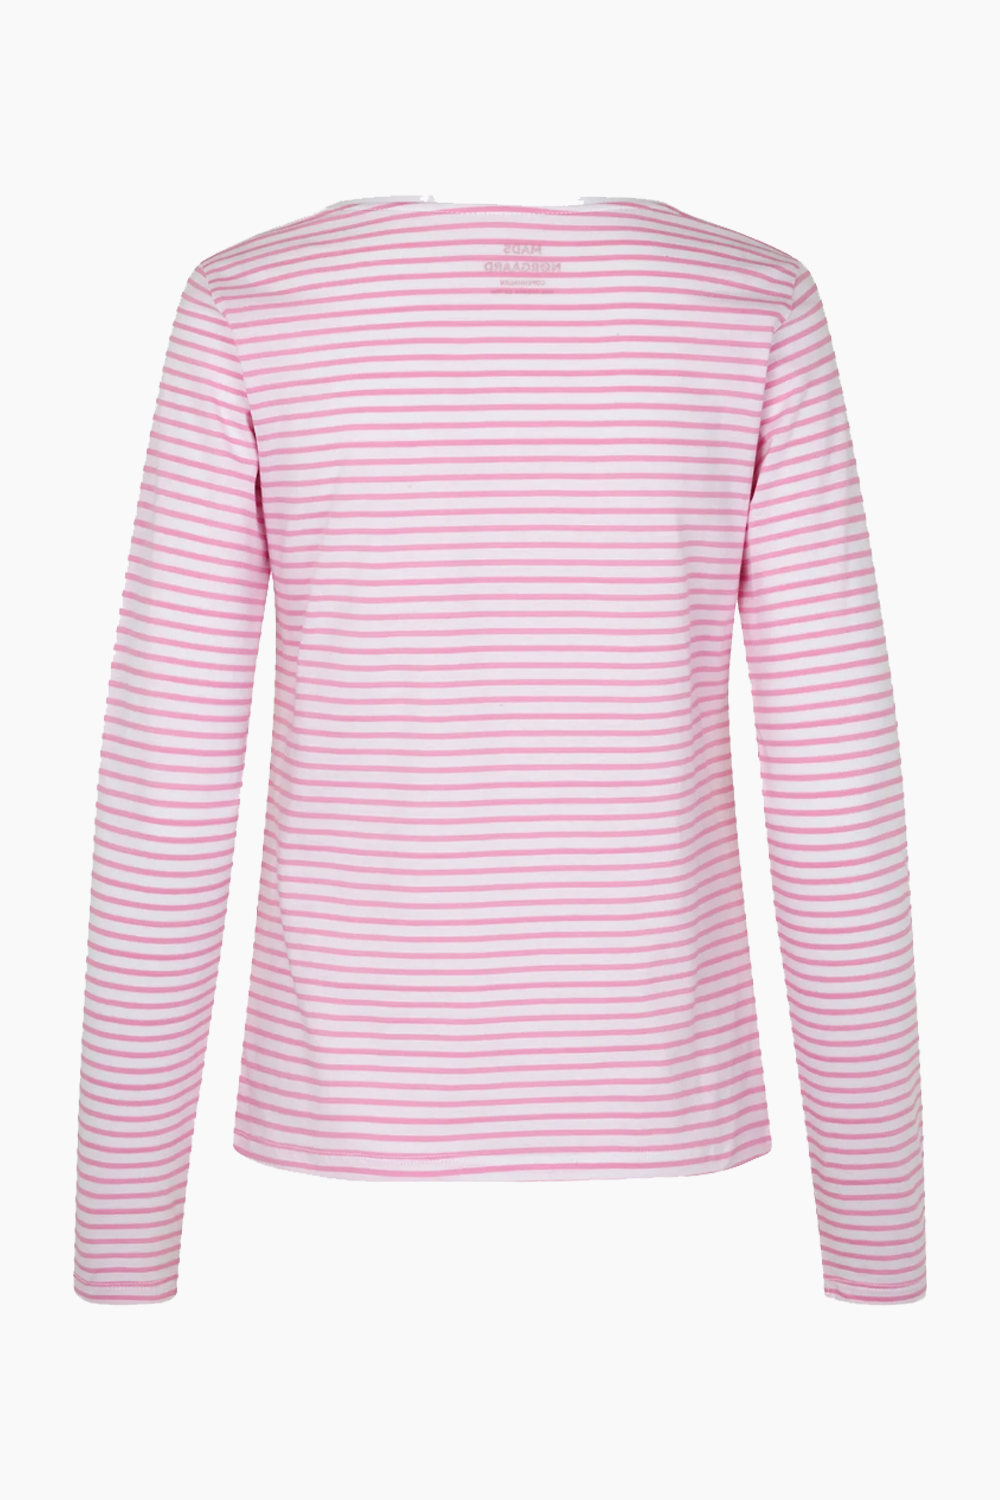 Organic Jersey Stripe Tenna Tee FAV - Begonia Pink - Mads Nørgaard